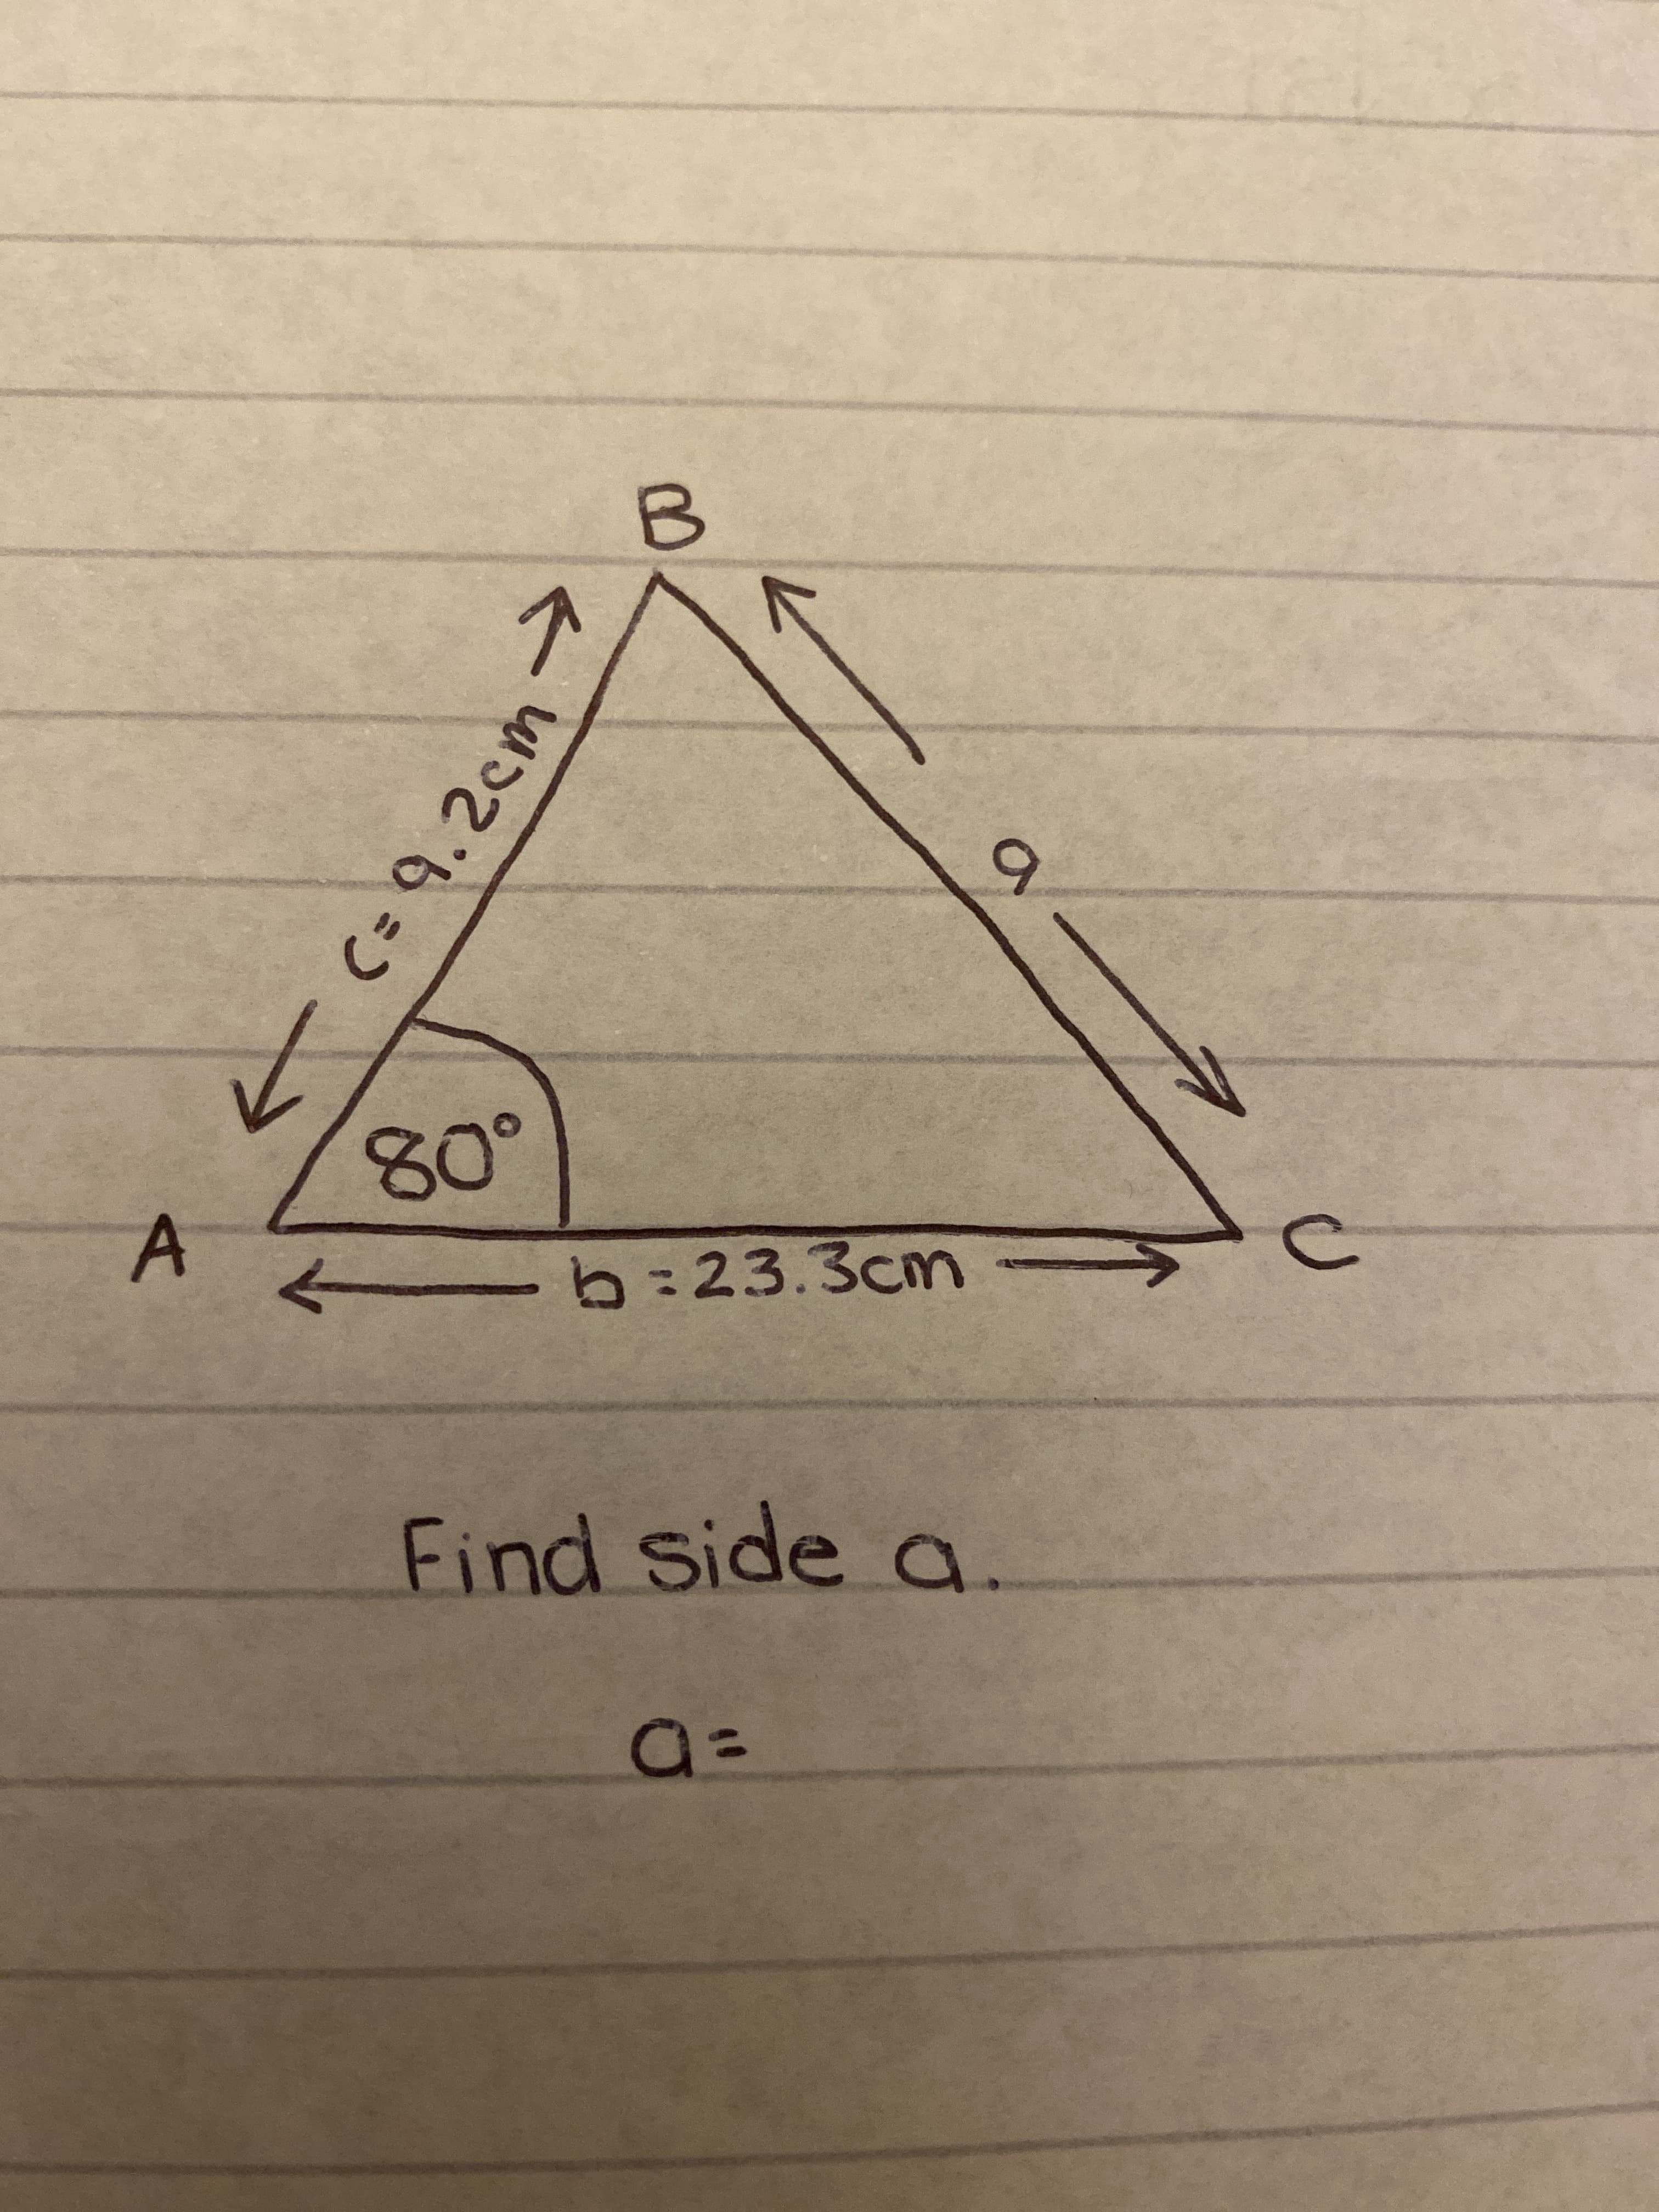 C= 9.2cm
9.
b:23.3cm >
Find side a
